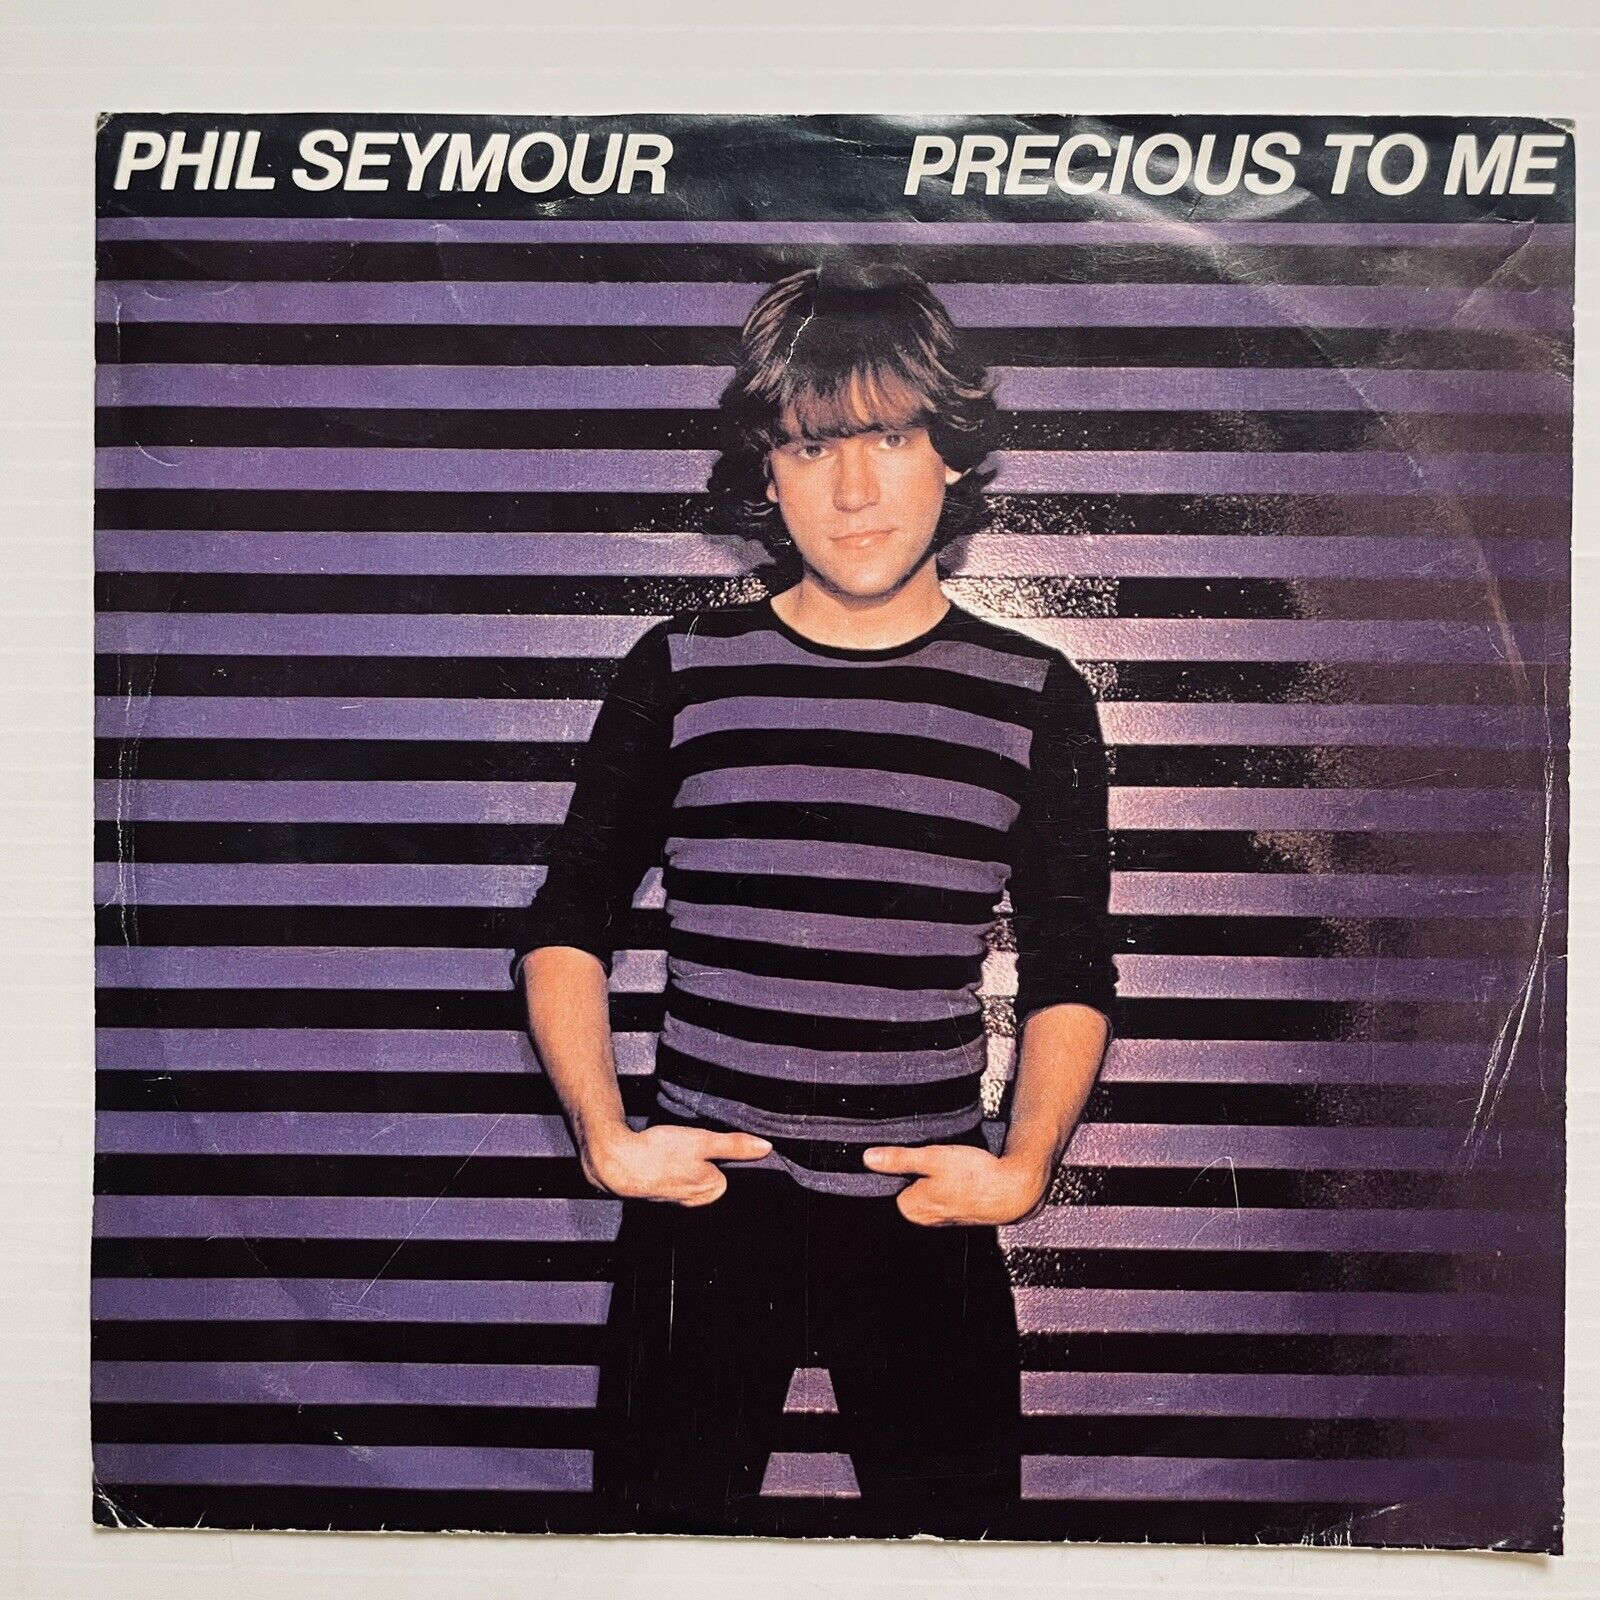 Phil Seymour Precious To Me Vinyl Record 7” 45 RPM Single ES 589 CBS 1980 OG